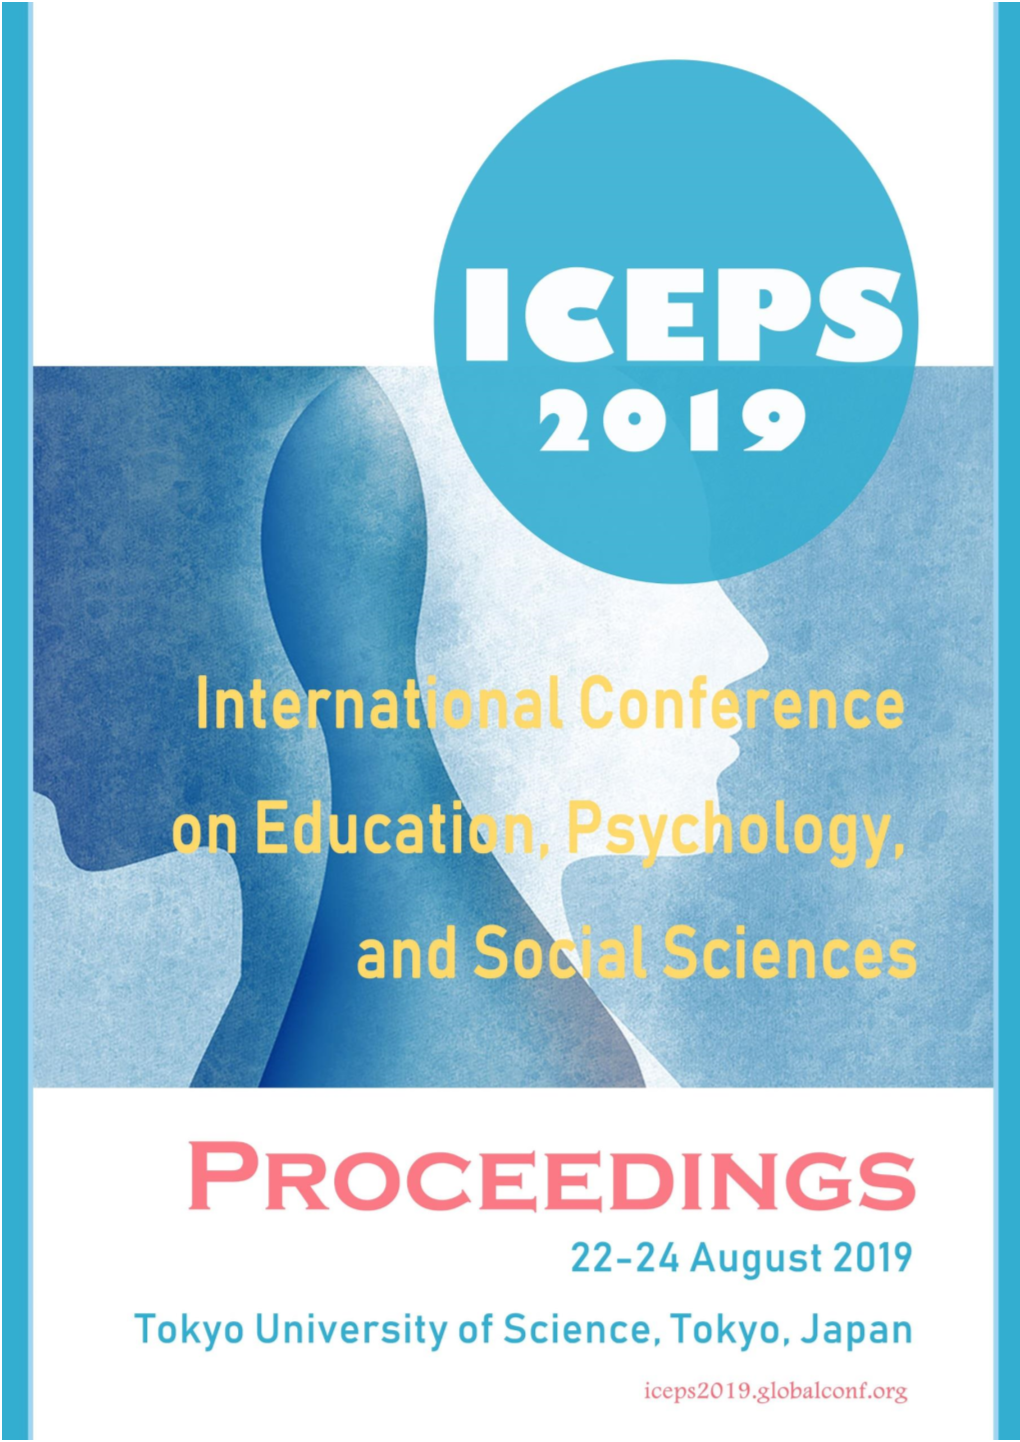 ICEPS 2019 Tokyo University of Science, Tokyo, Japan August 22-24, 2019